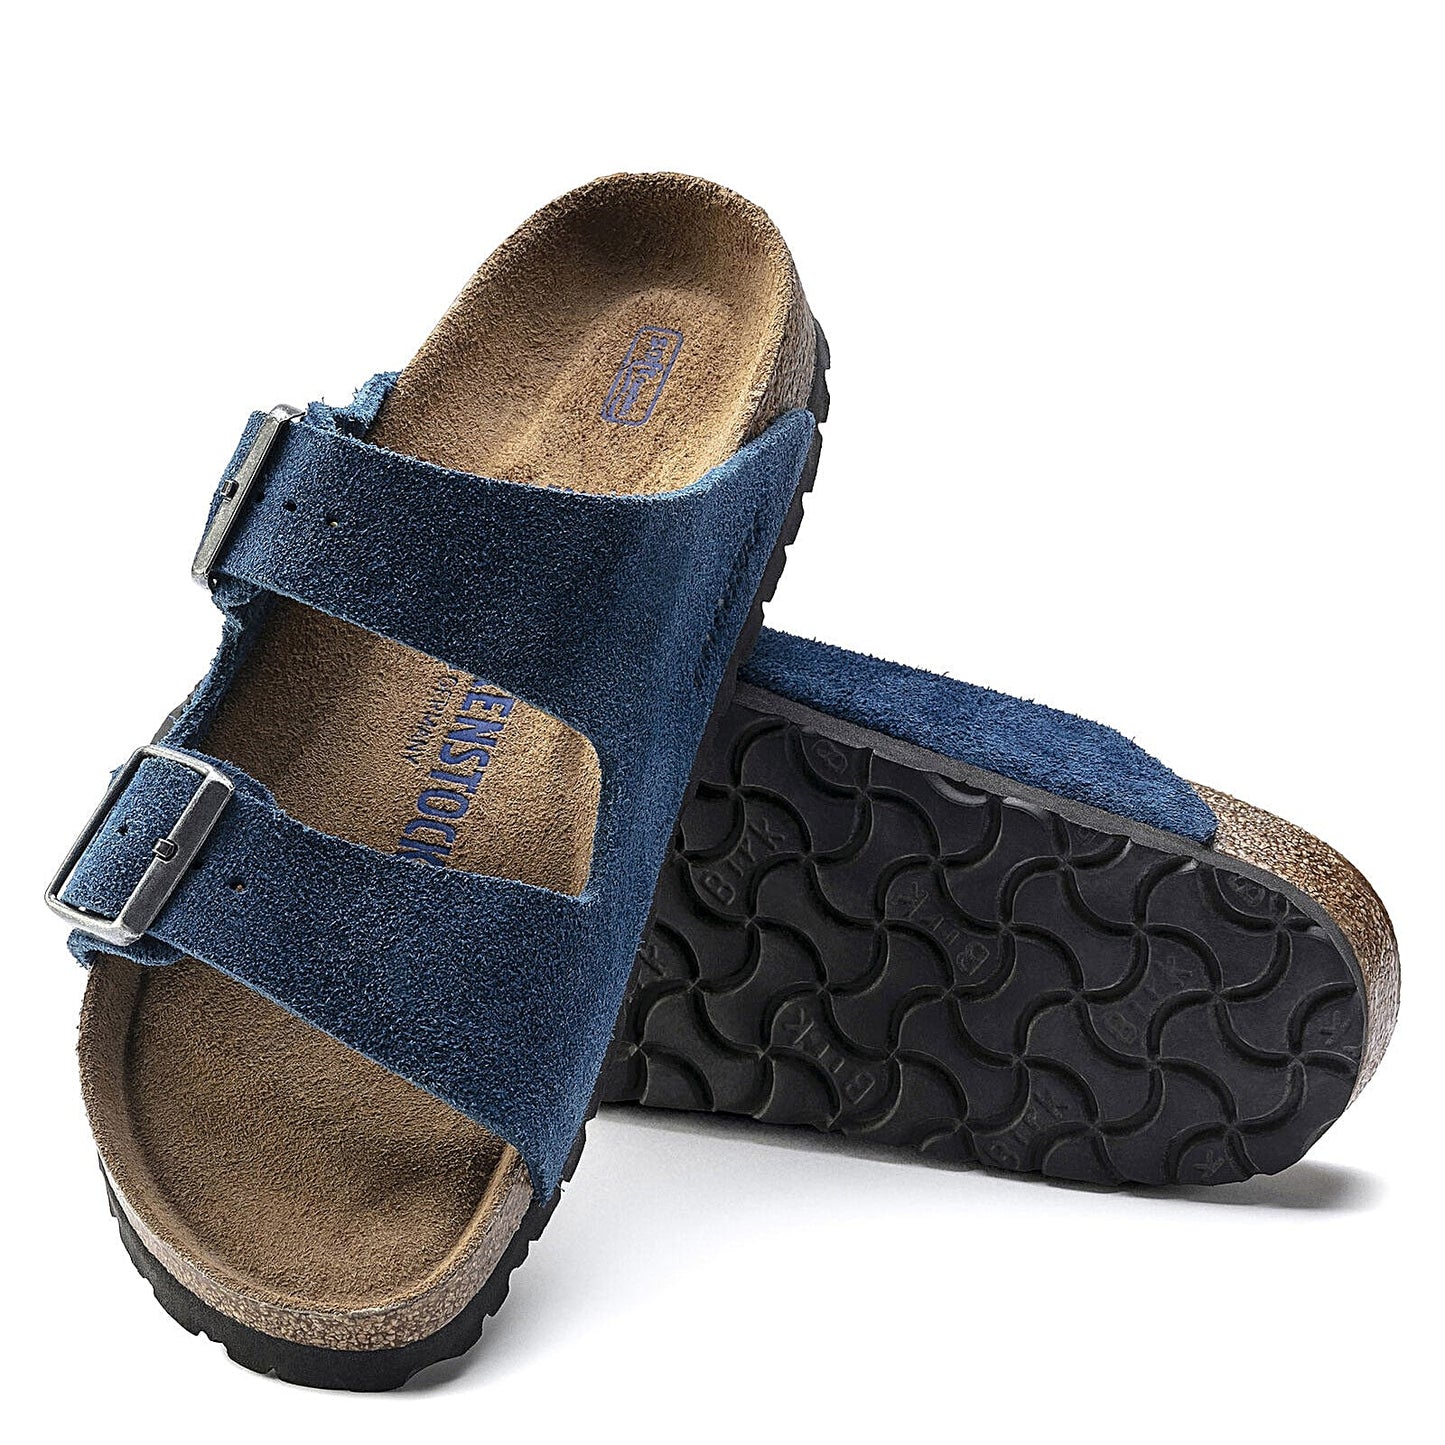 Peltz Shoes  Women's Birkenstock Arizona Soft Footbed Sandal - Narrow Width